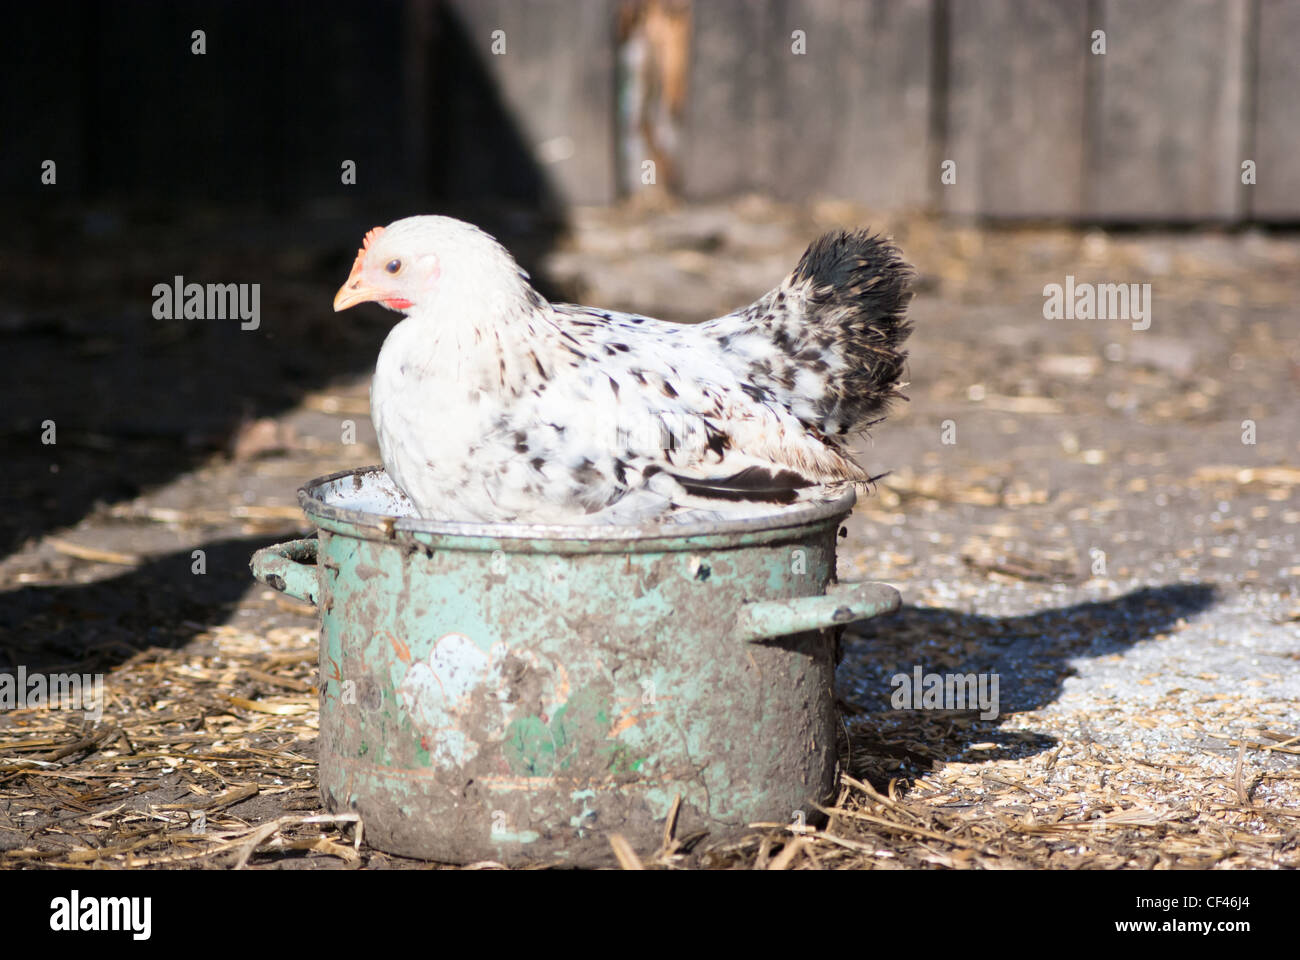 Bild zeigt Natur Bauernhof Hühner auf der Suche nach Nahrung, Tier-Reihe Stockfoto